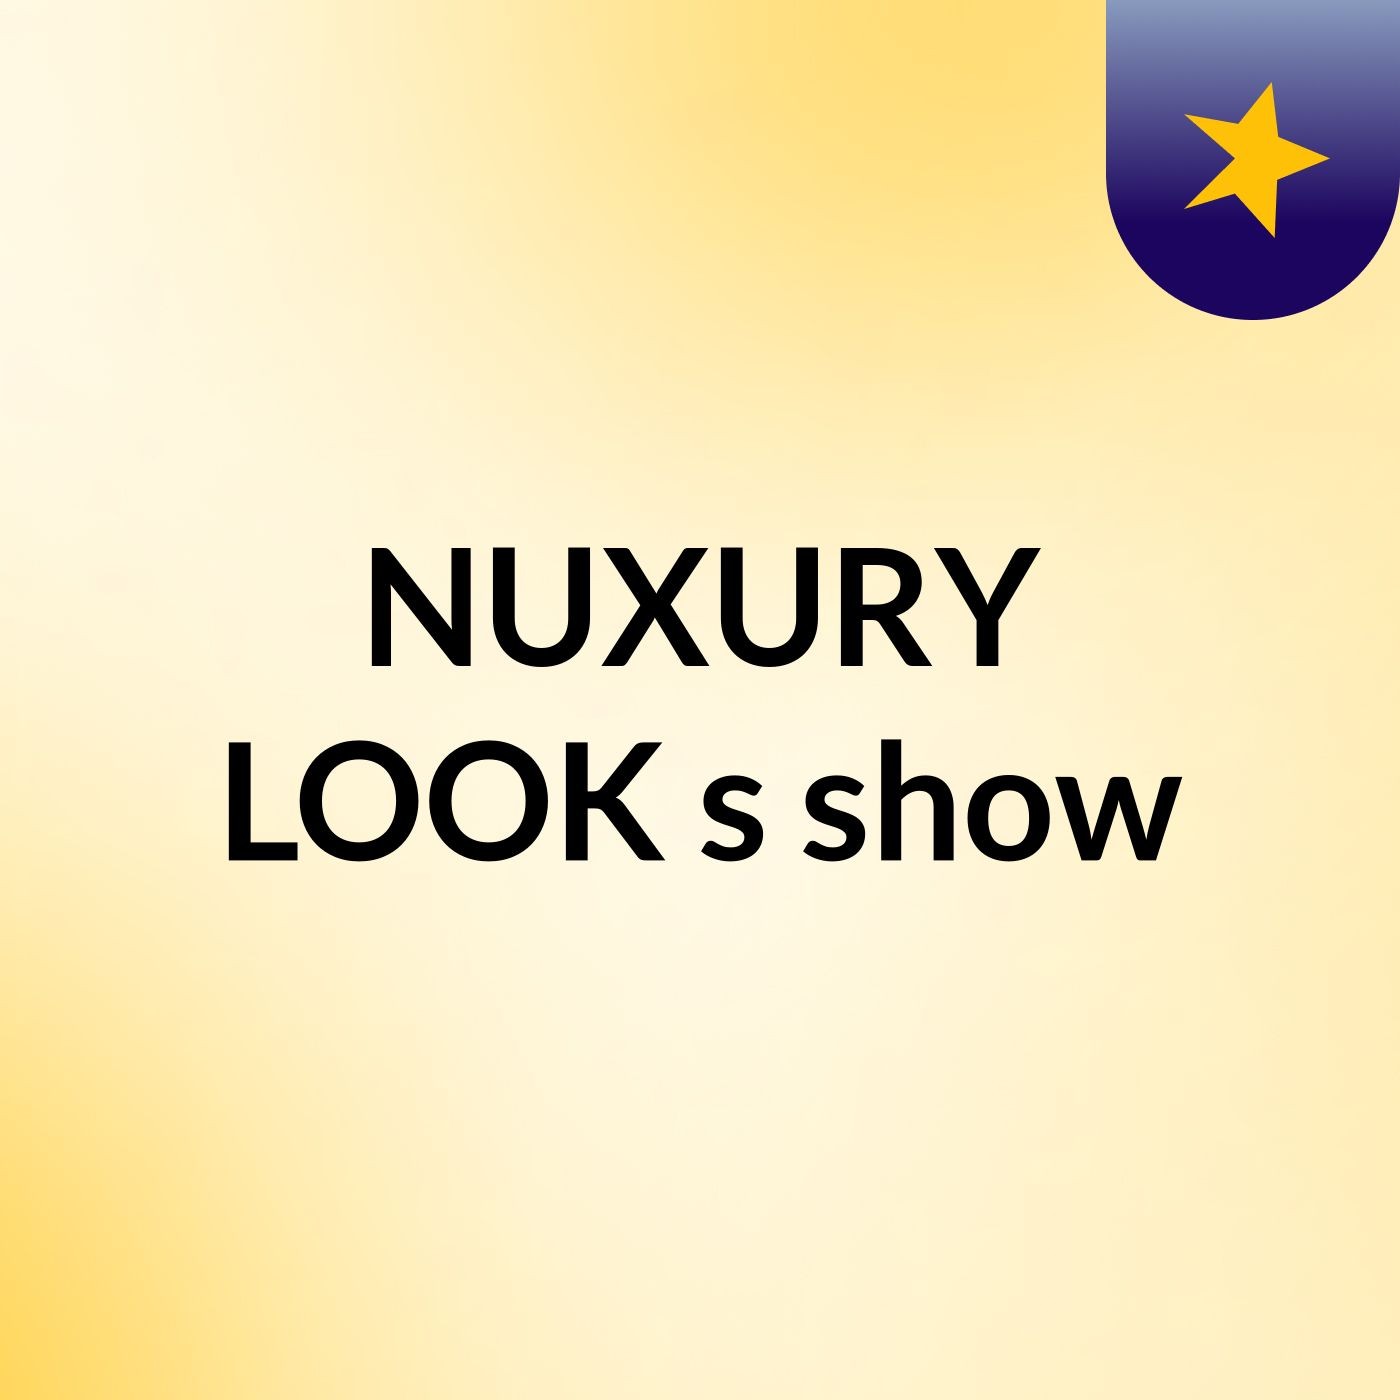 NUXURY LOOK's show